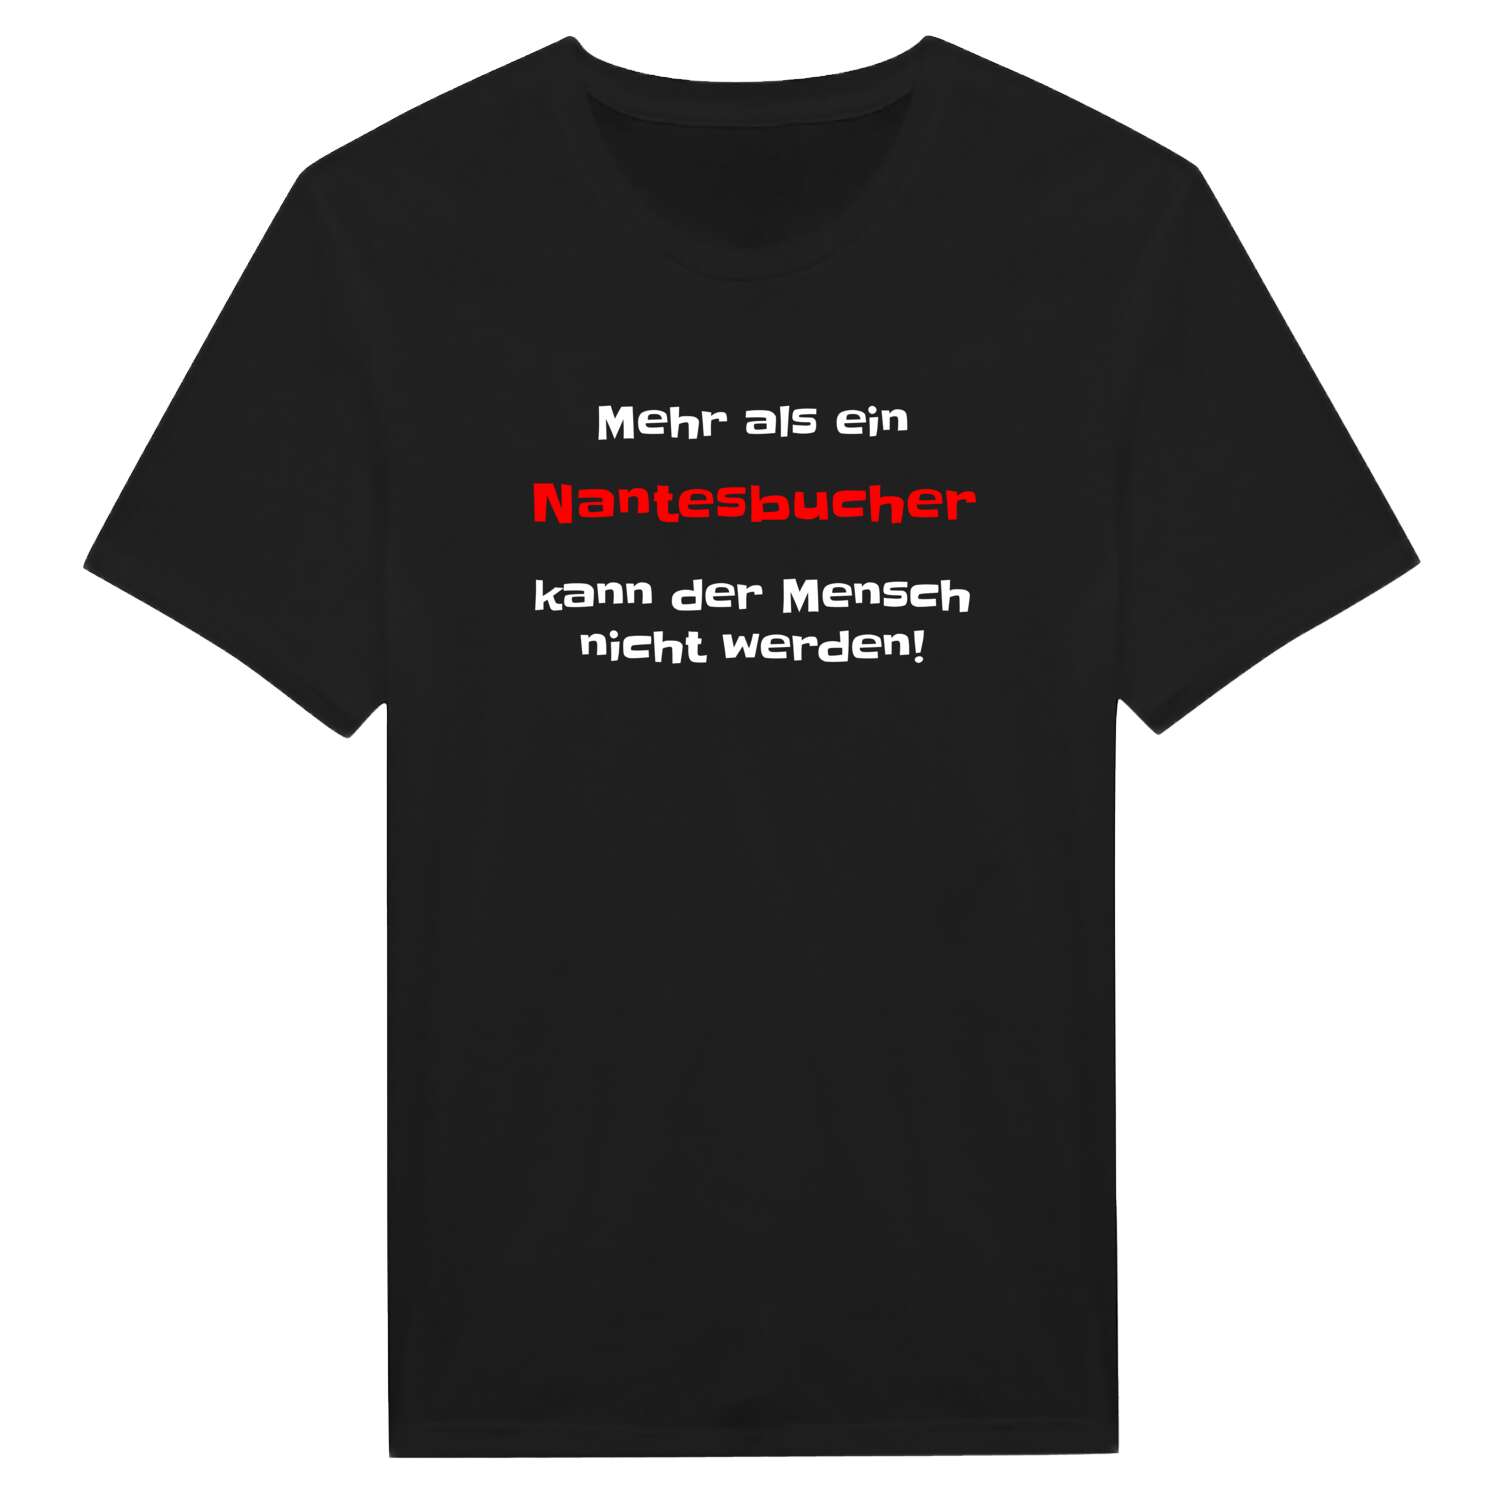 Nantesbuch T-Shirt »Mehr als ein«